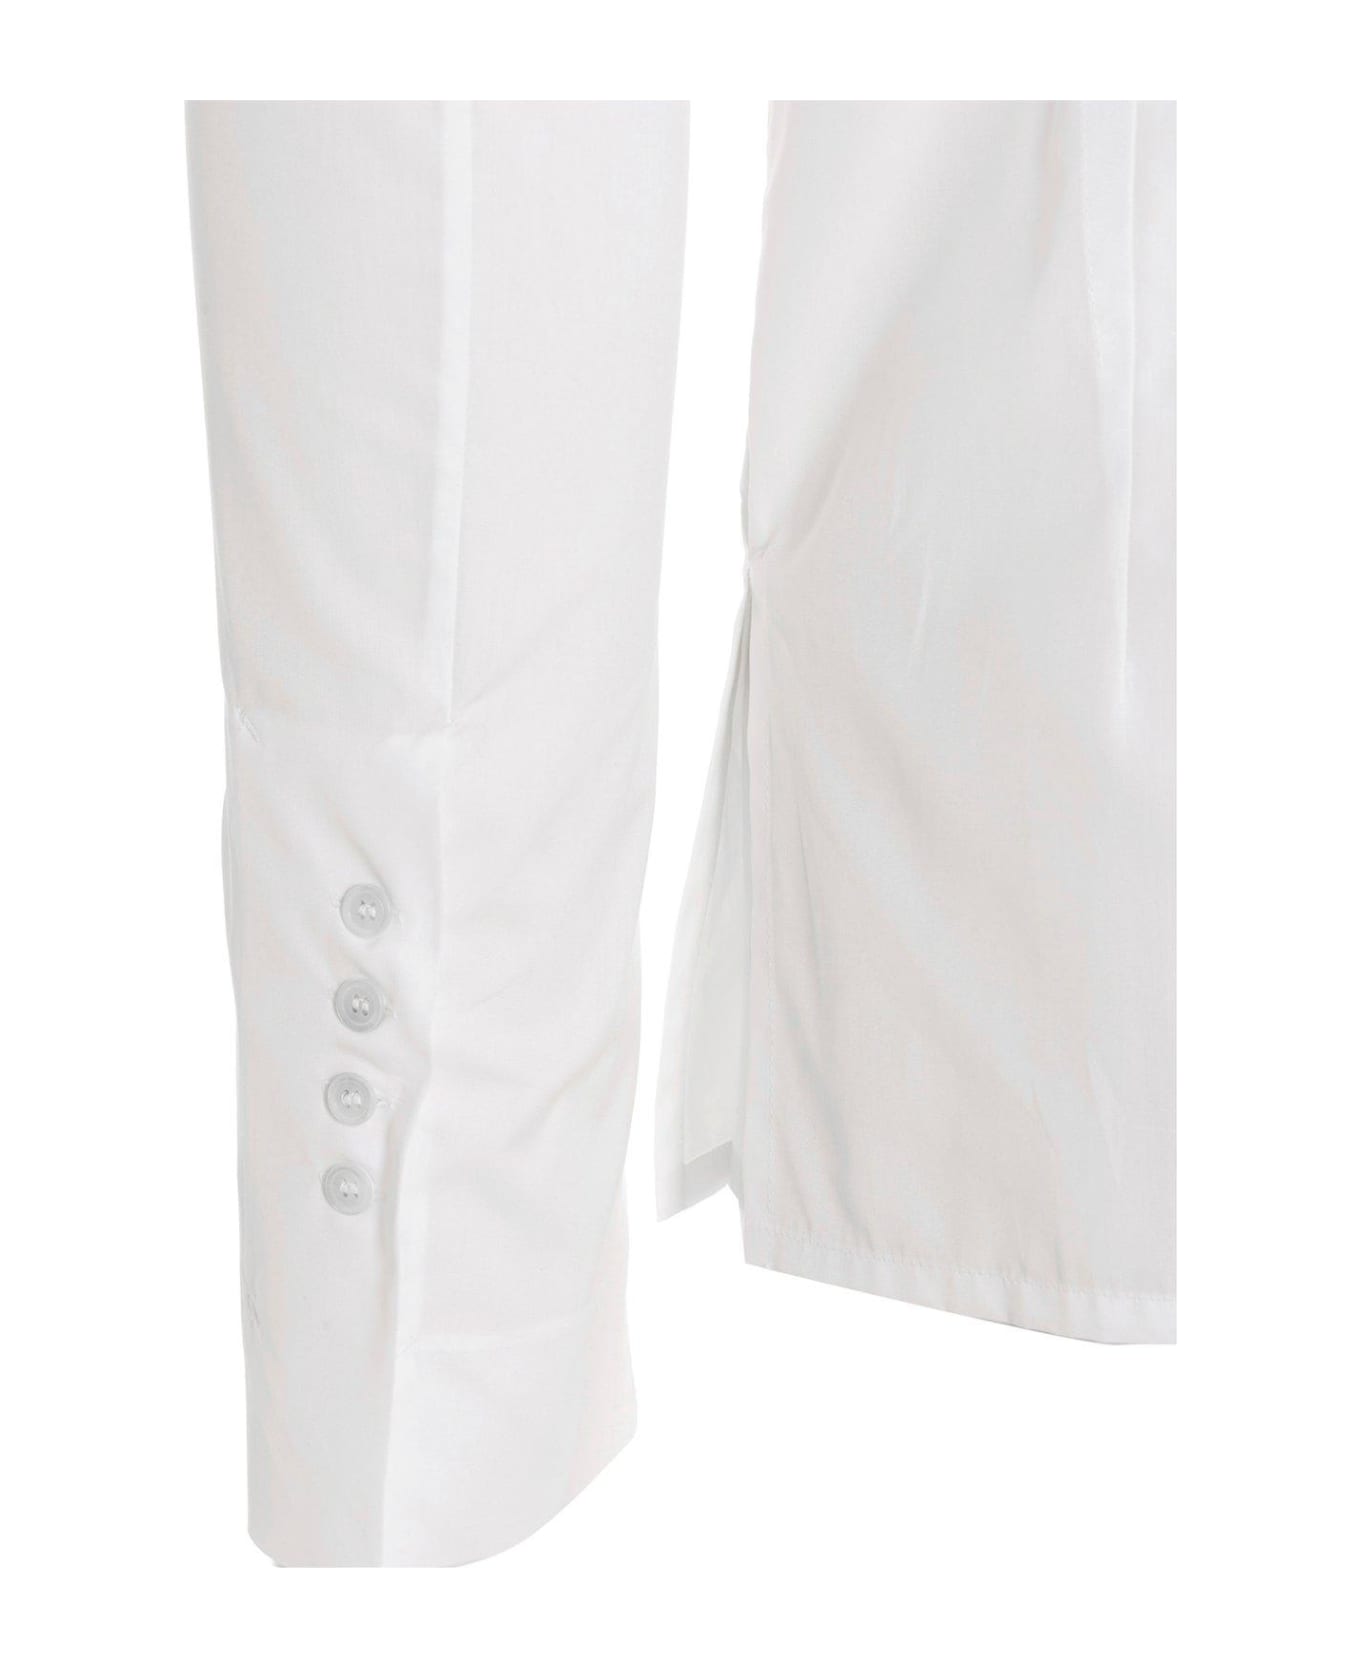 Sapio No 16 Buttoned Long-sleeved Shirt - Cotone